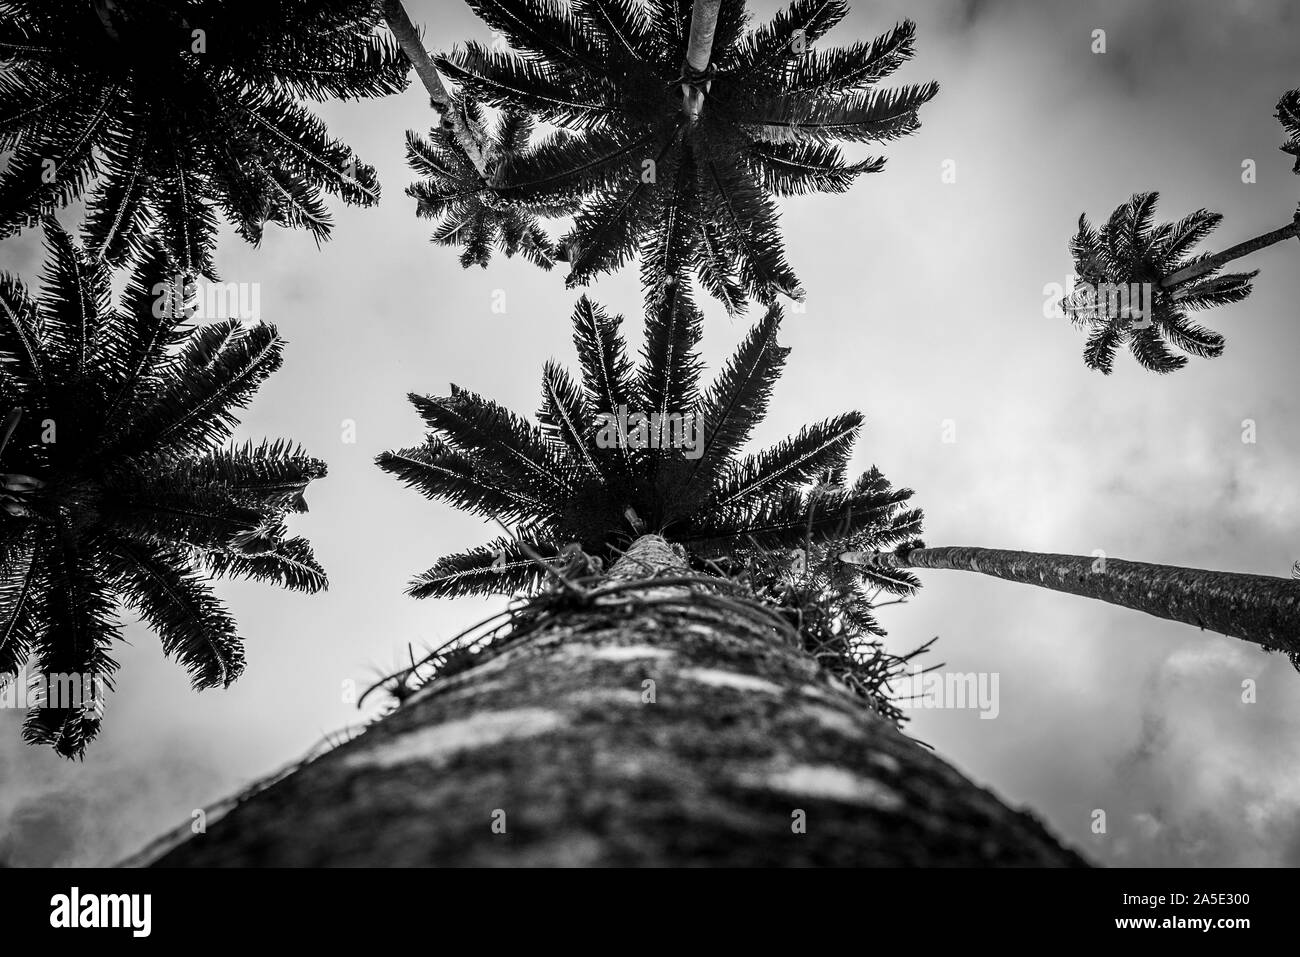 Palmeira Imperial at Gardem botánico en Río Foto de stock